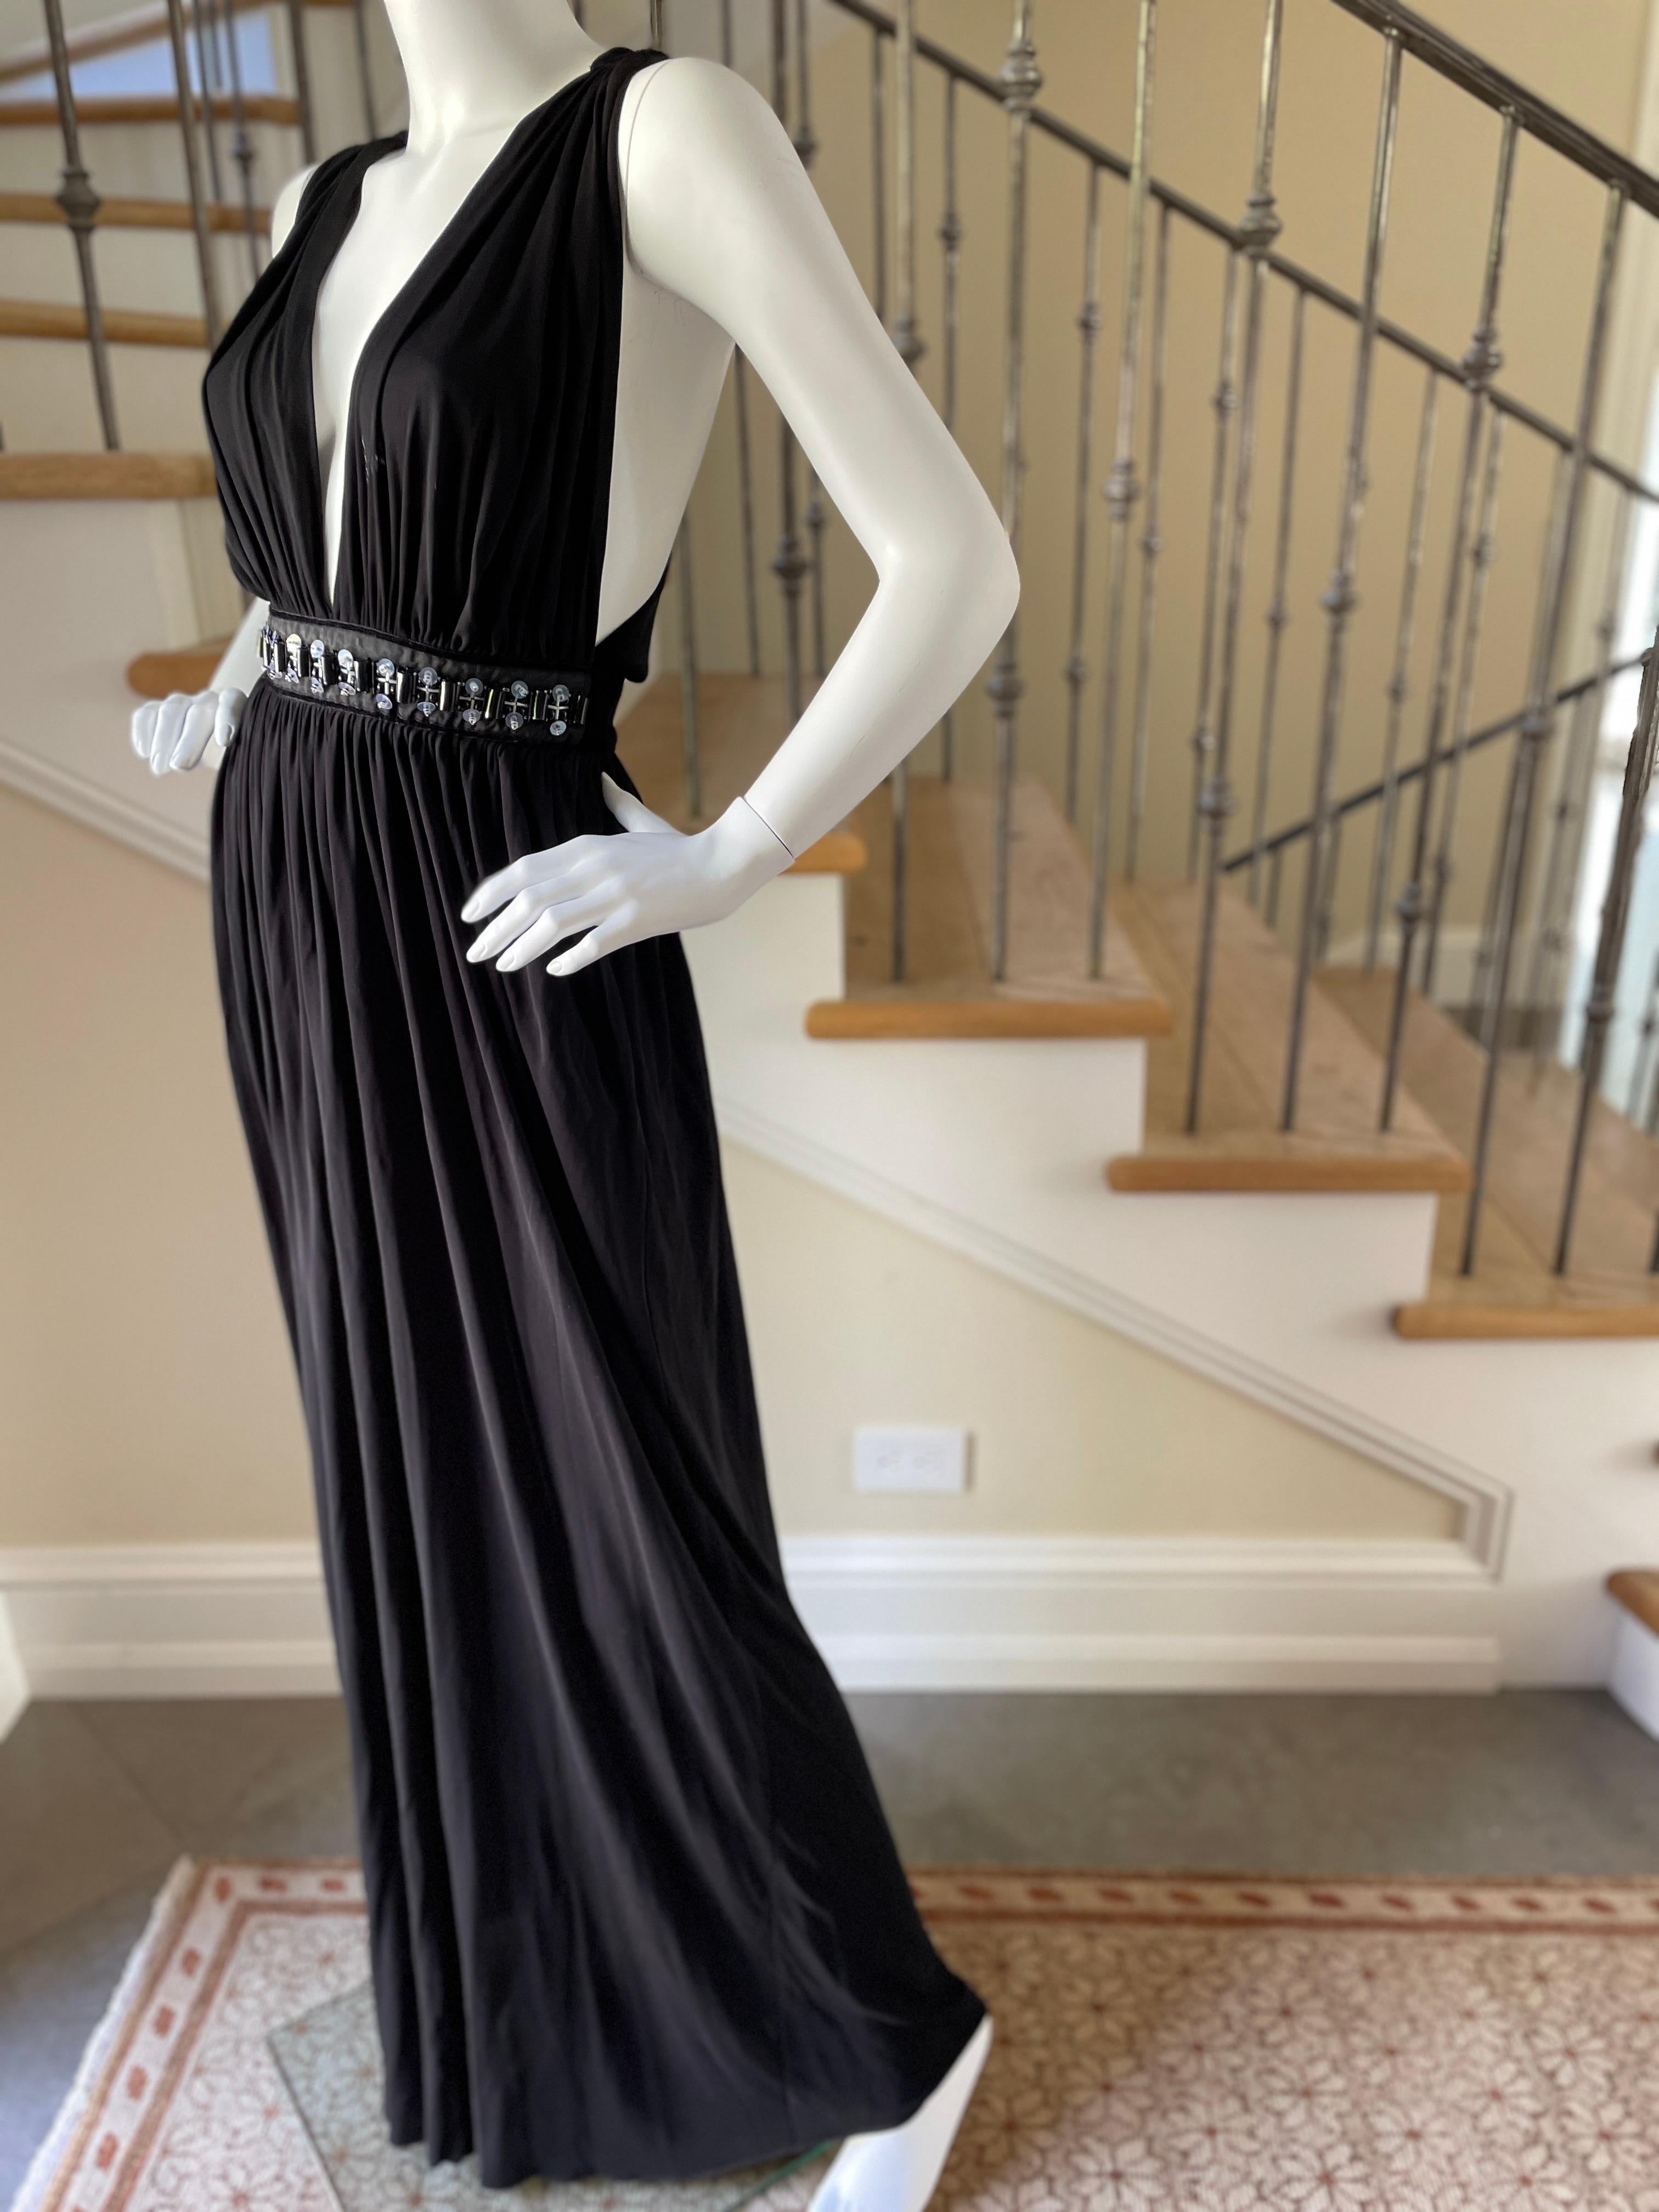 D&G by Dolce & Gabbana Vintage Plunging Black Evening Dress w Embellished Waist For Sale 3